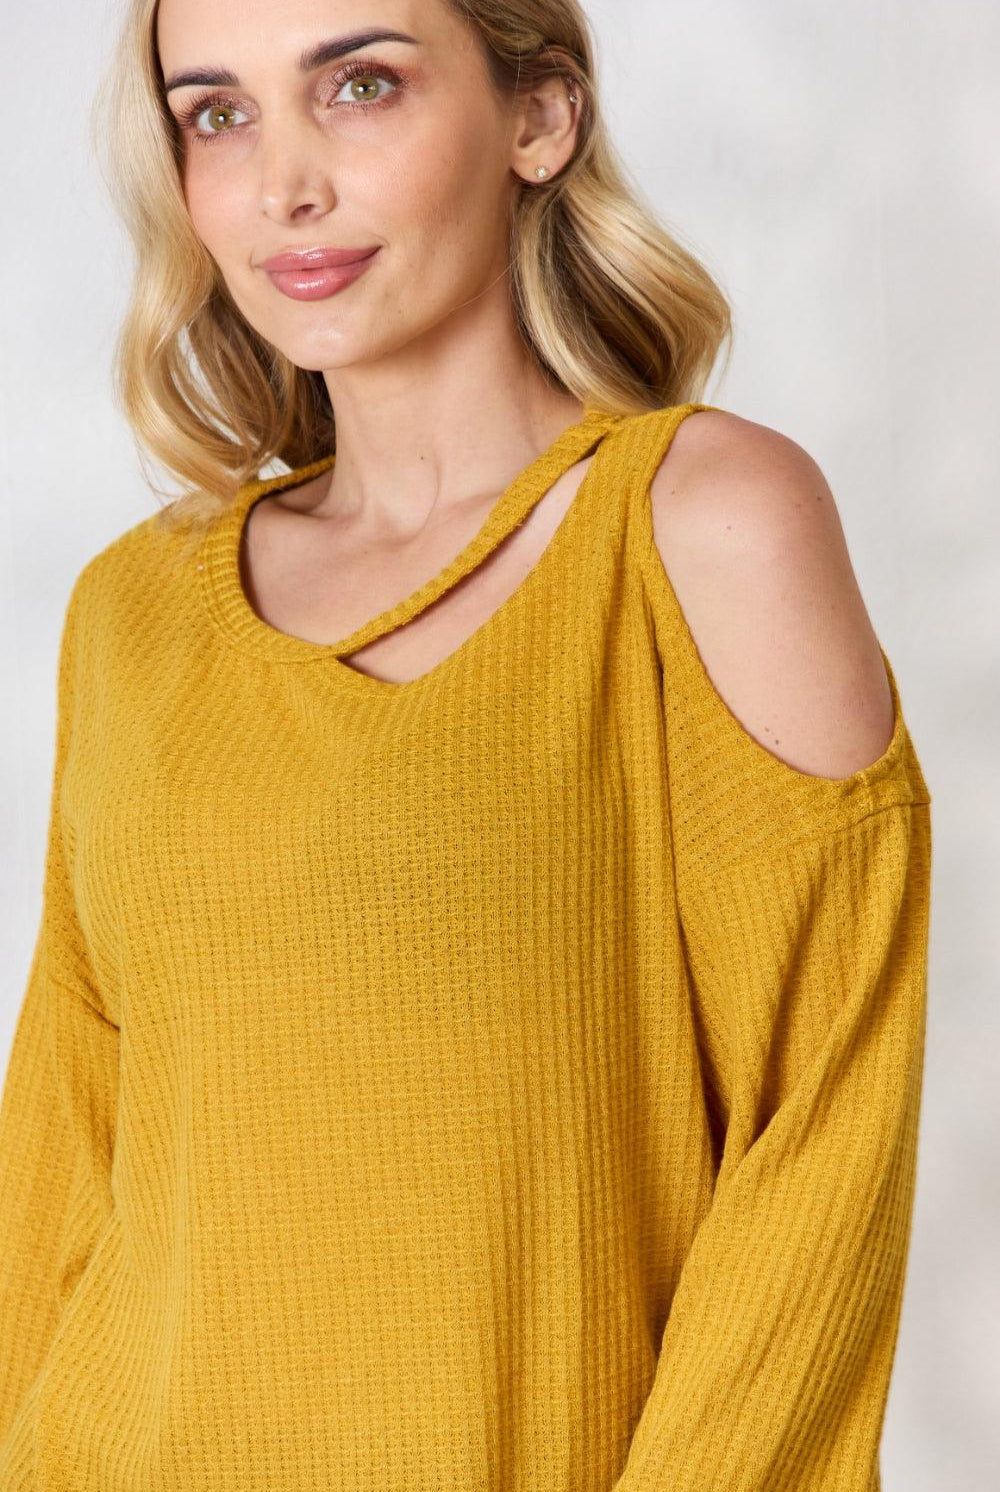 Women's Shirts BiBi Cutout Long Sleeve Waffle Knit Top